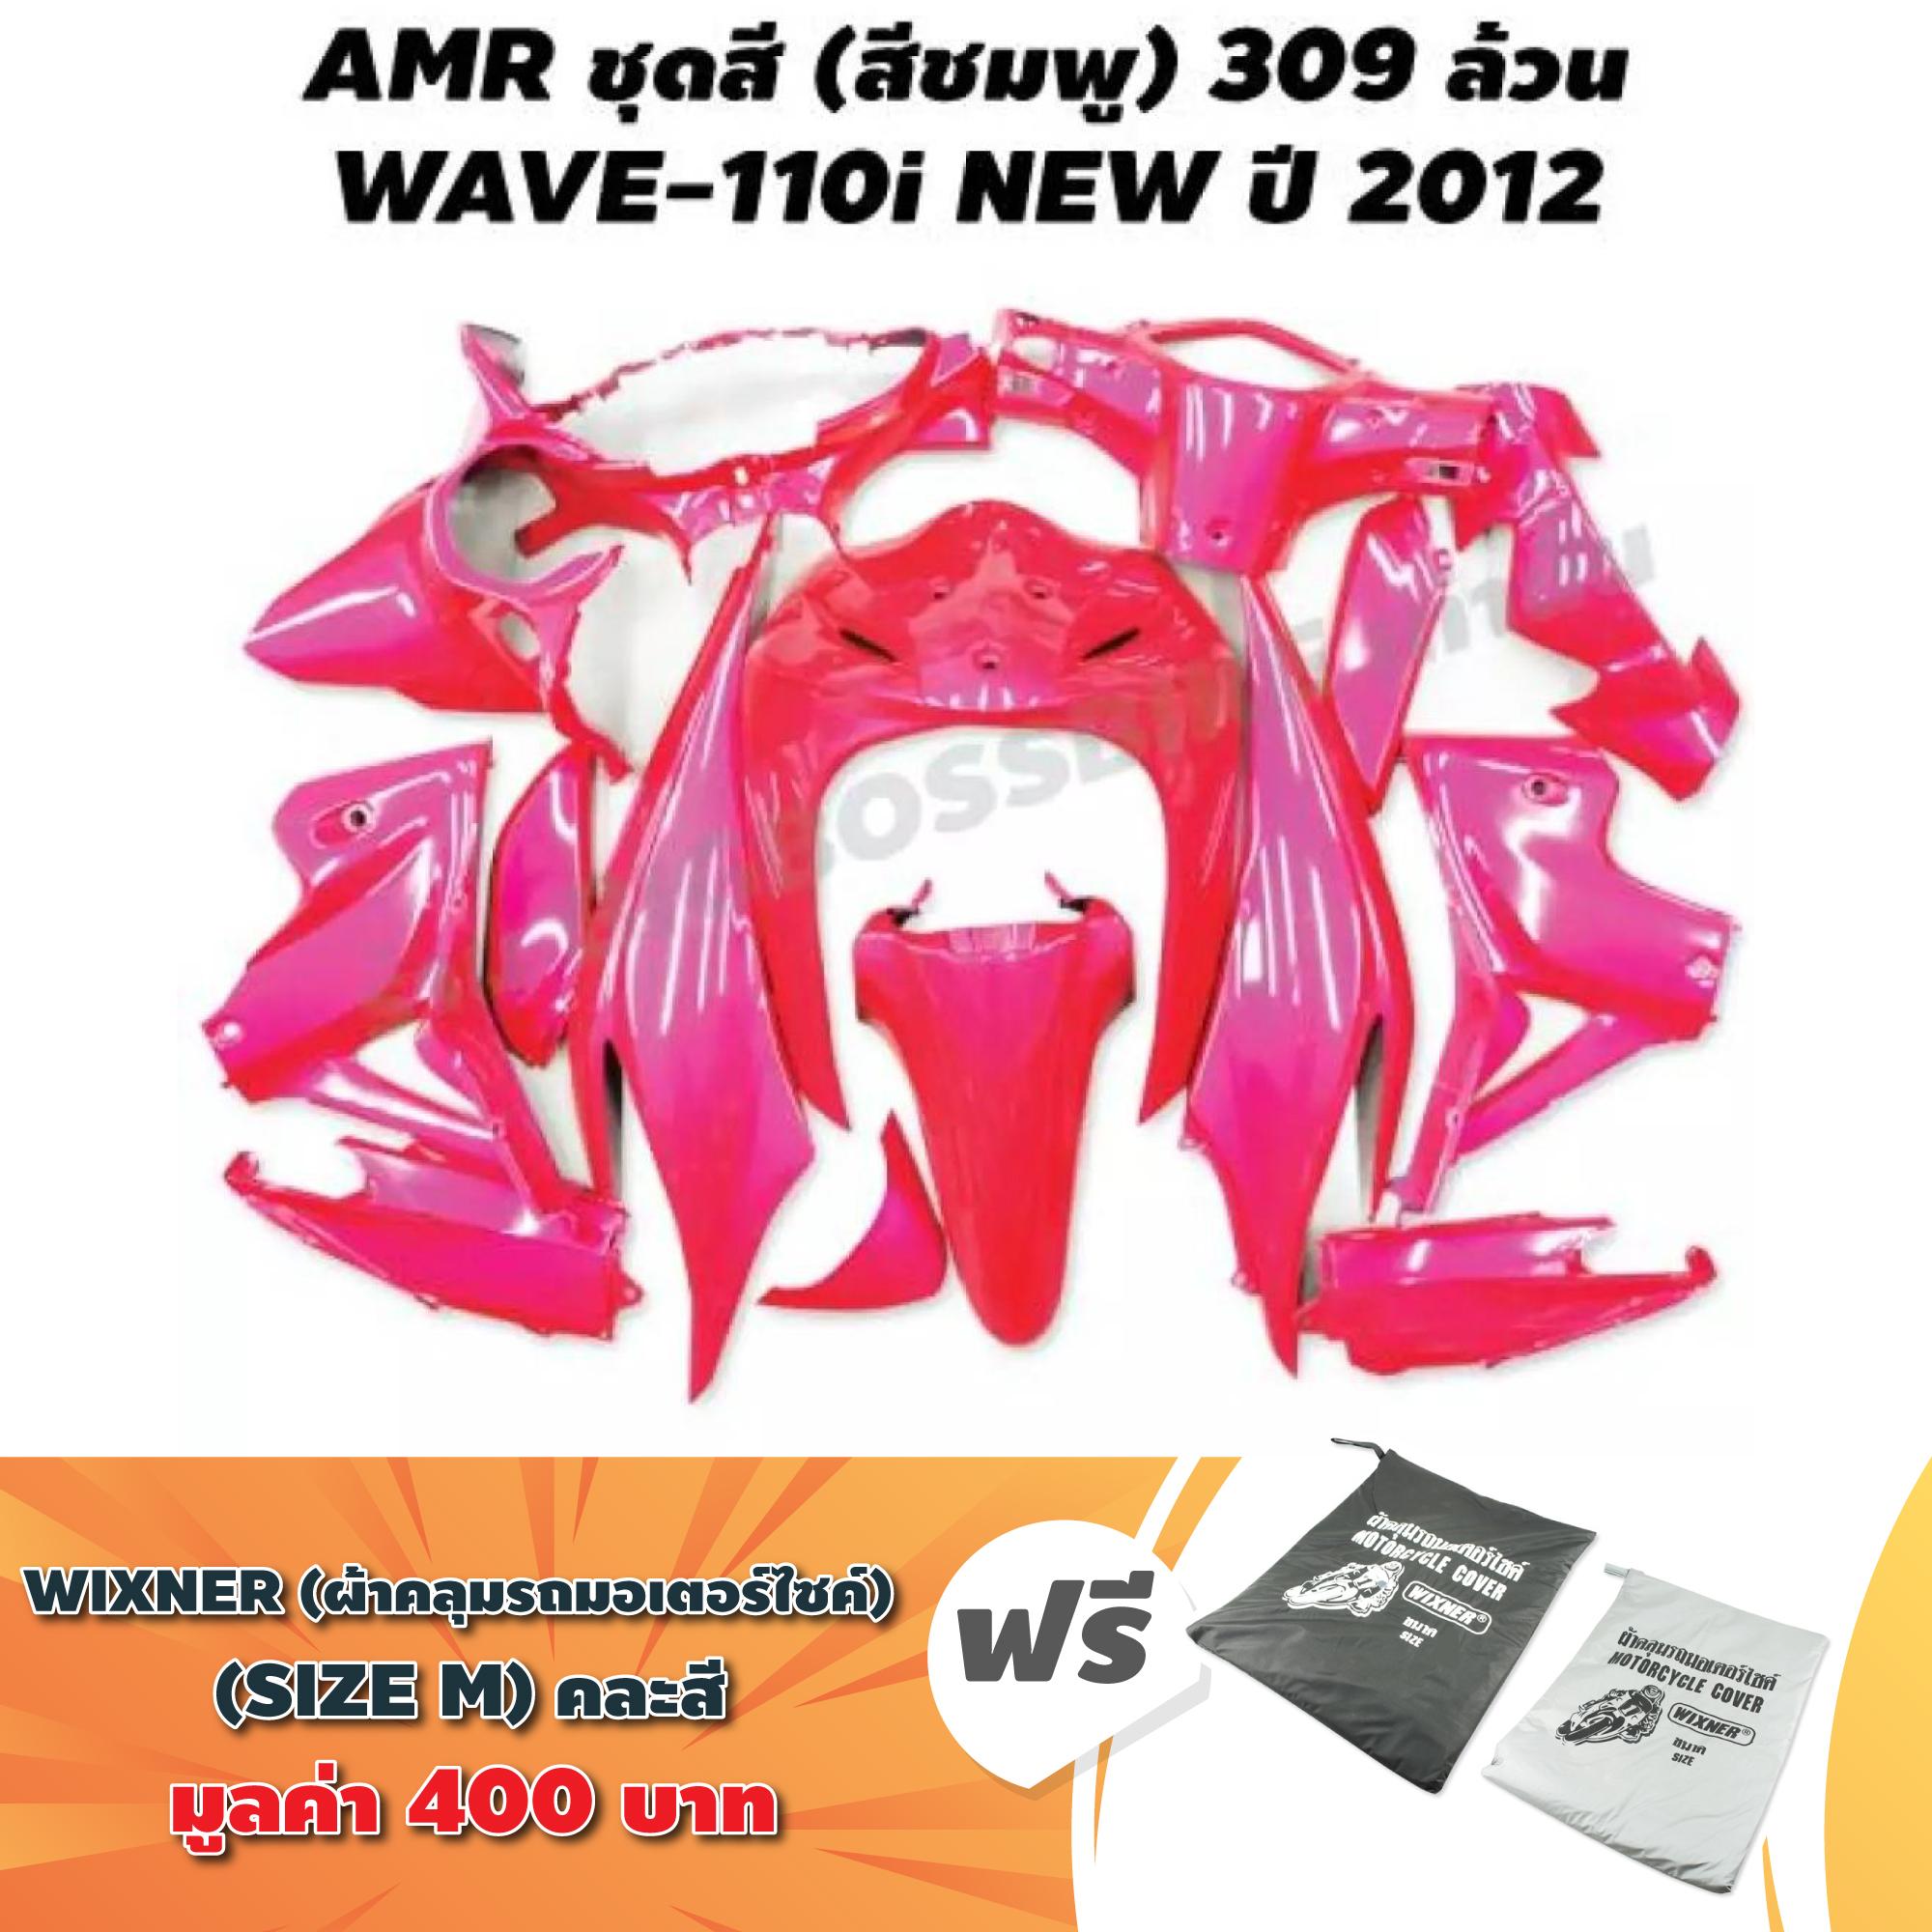 (ชุดสี+ฟรีผ้าคลุมรถ) AMR ชุดสี สำหรับ WAVE-110i NEW ปี 2012 2014 สีชมพู 309 ล้วน + ฟรี ผ้าคลุมรถ มอเตอร์ไซค์ SIZE M คละสี 1ผืน มูลค่า 400 บาท